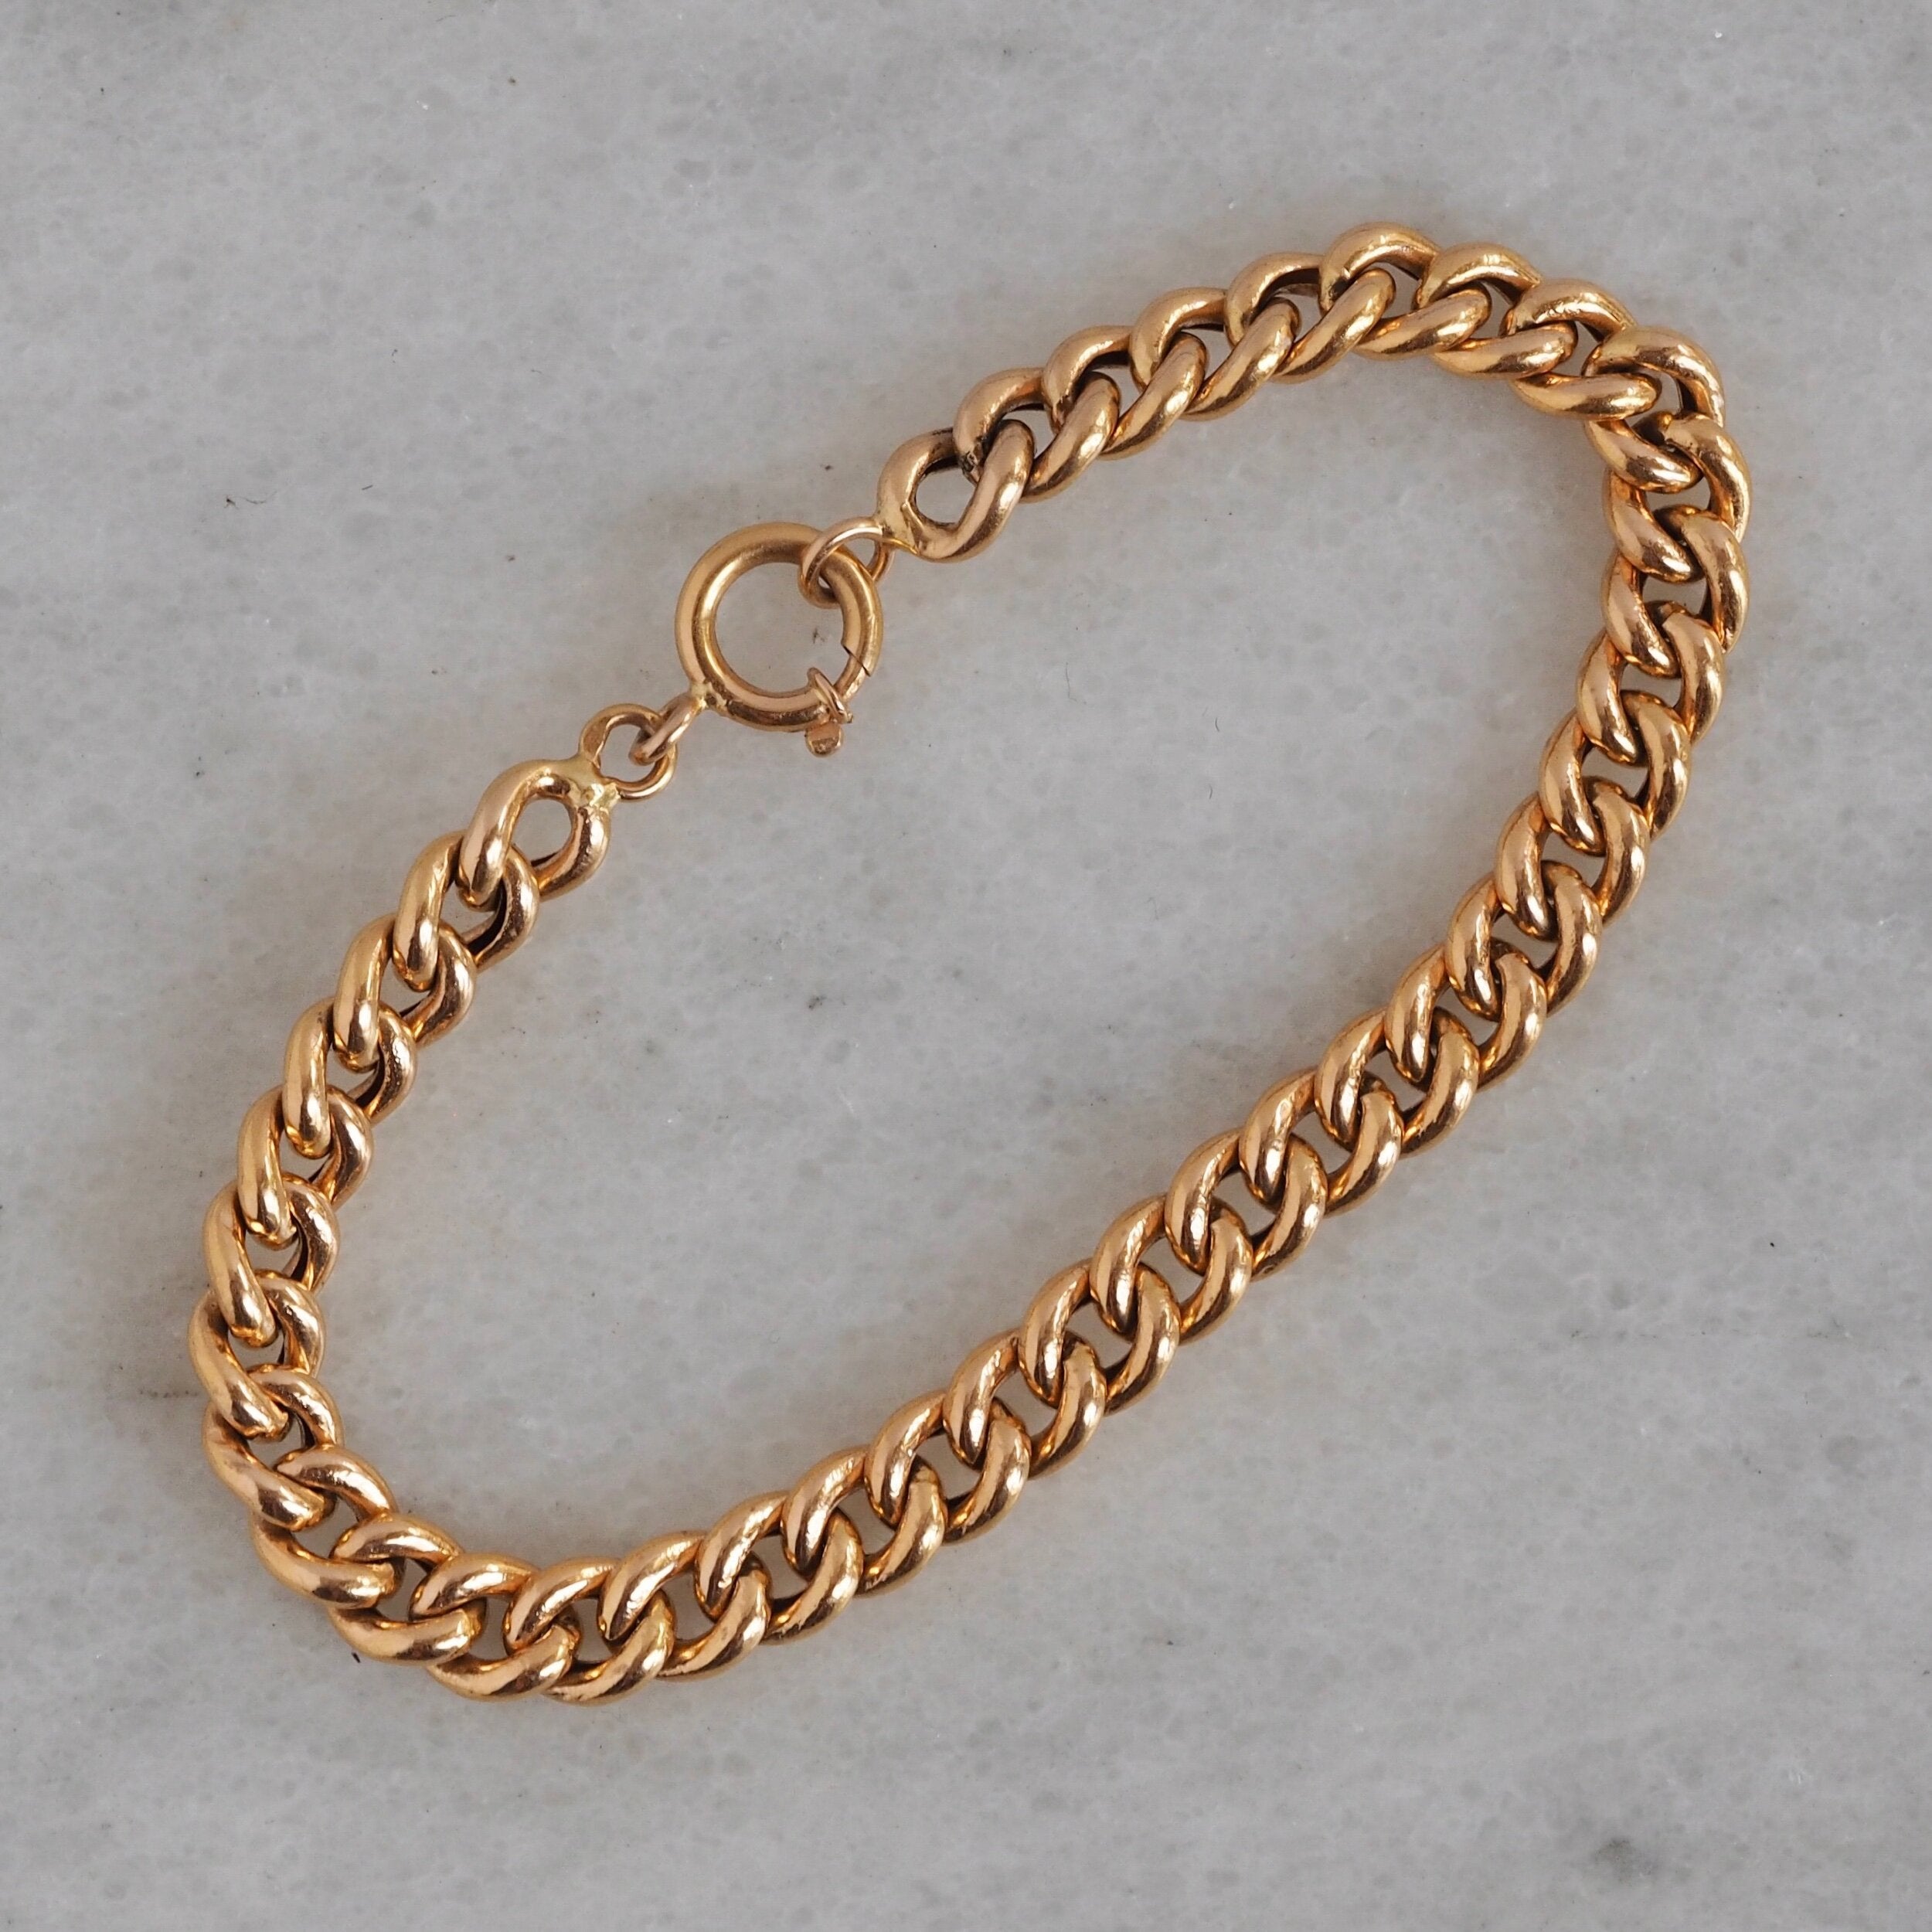 Vintage Portuguese 19k Gold Curb Chain Bracelet